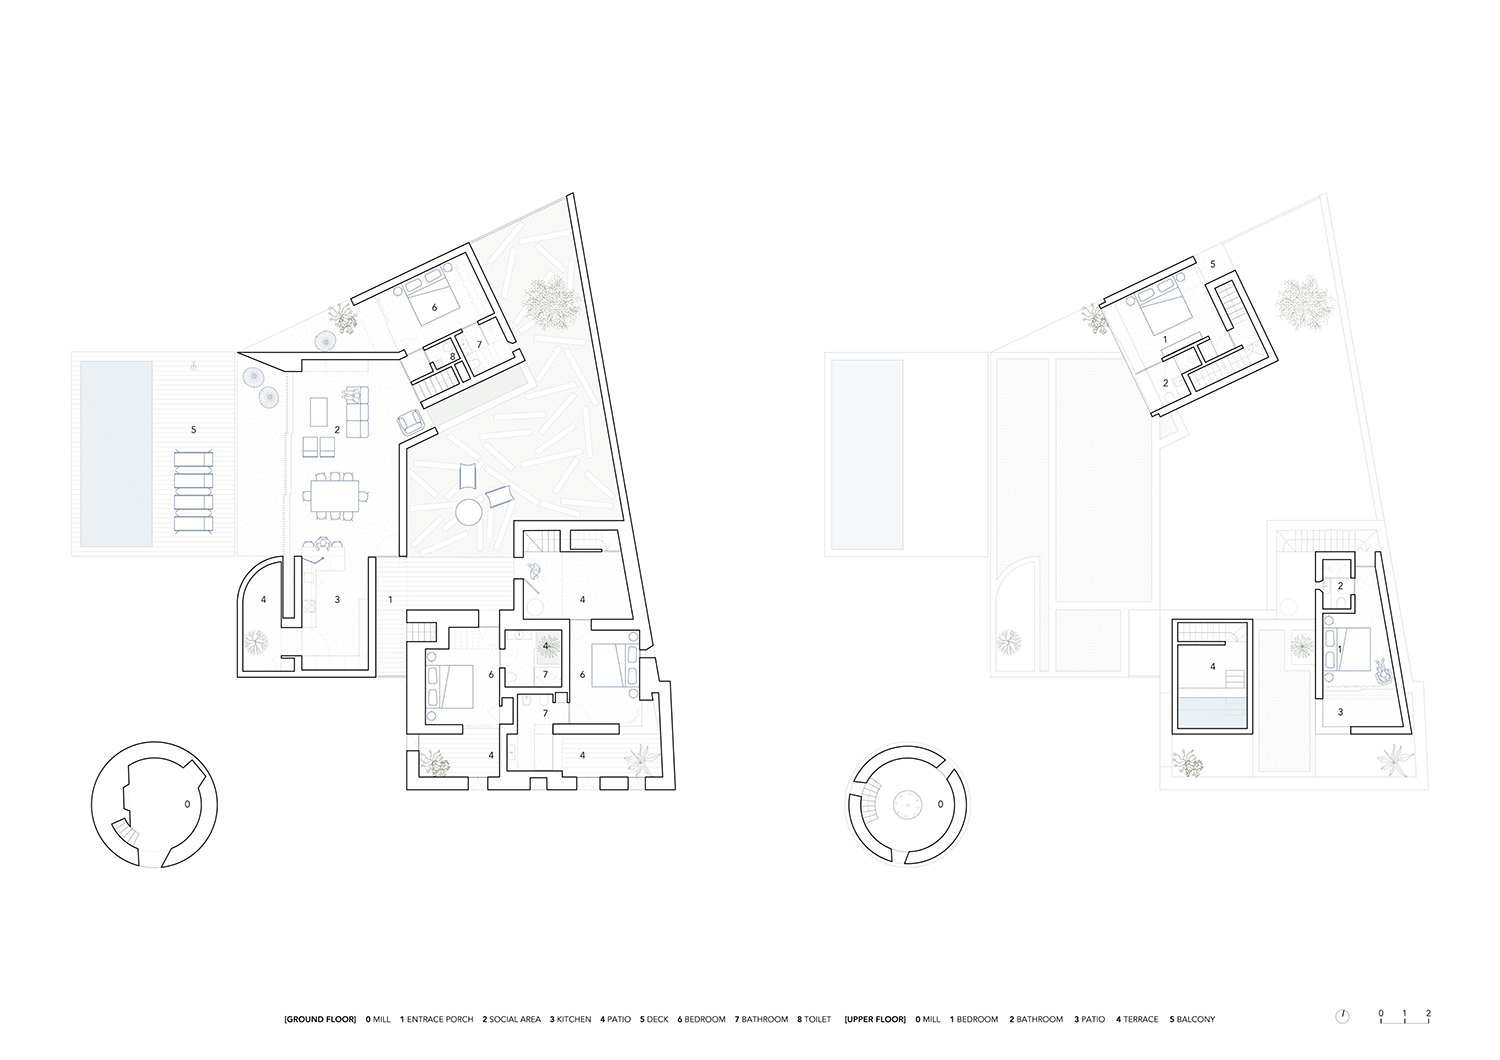 Atelier Data Architecture Firm,230㎡白色美学别墅,别墅设计,乡村别墅,住宅改造,别墅设计案例,住宅设计案例,白色别墅,230㎡别墅